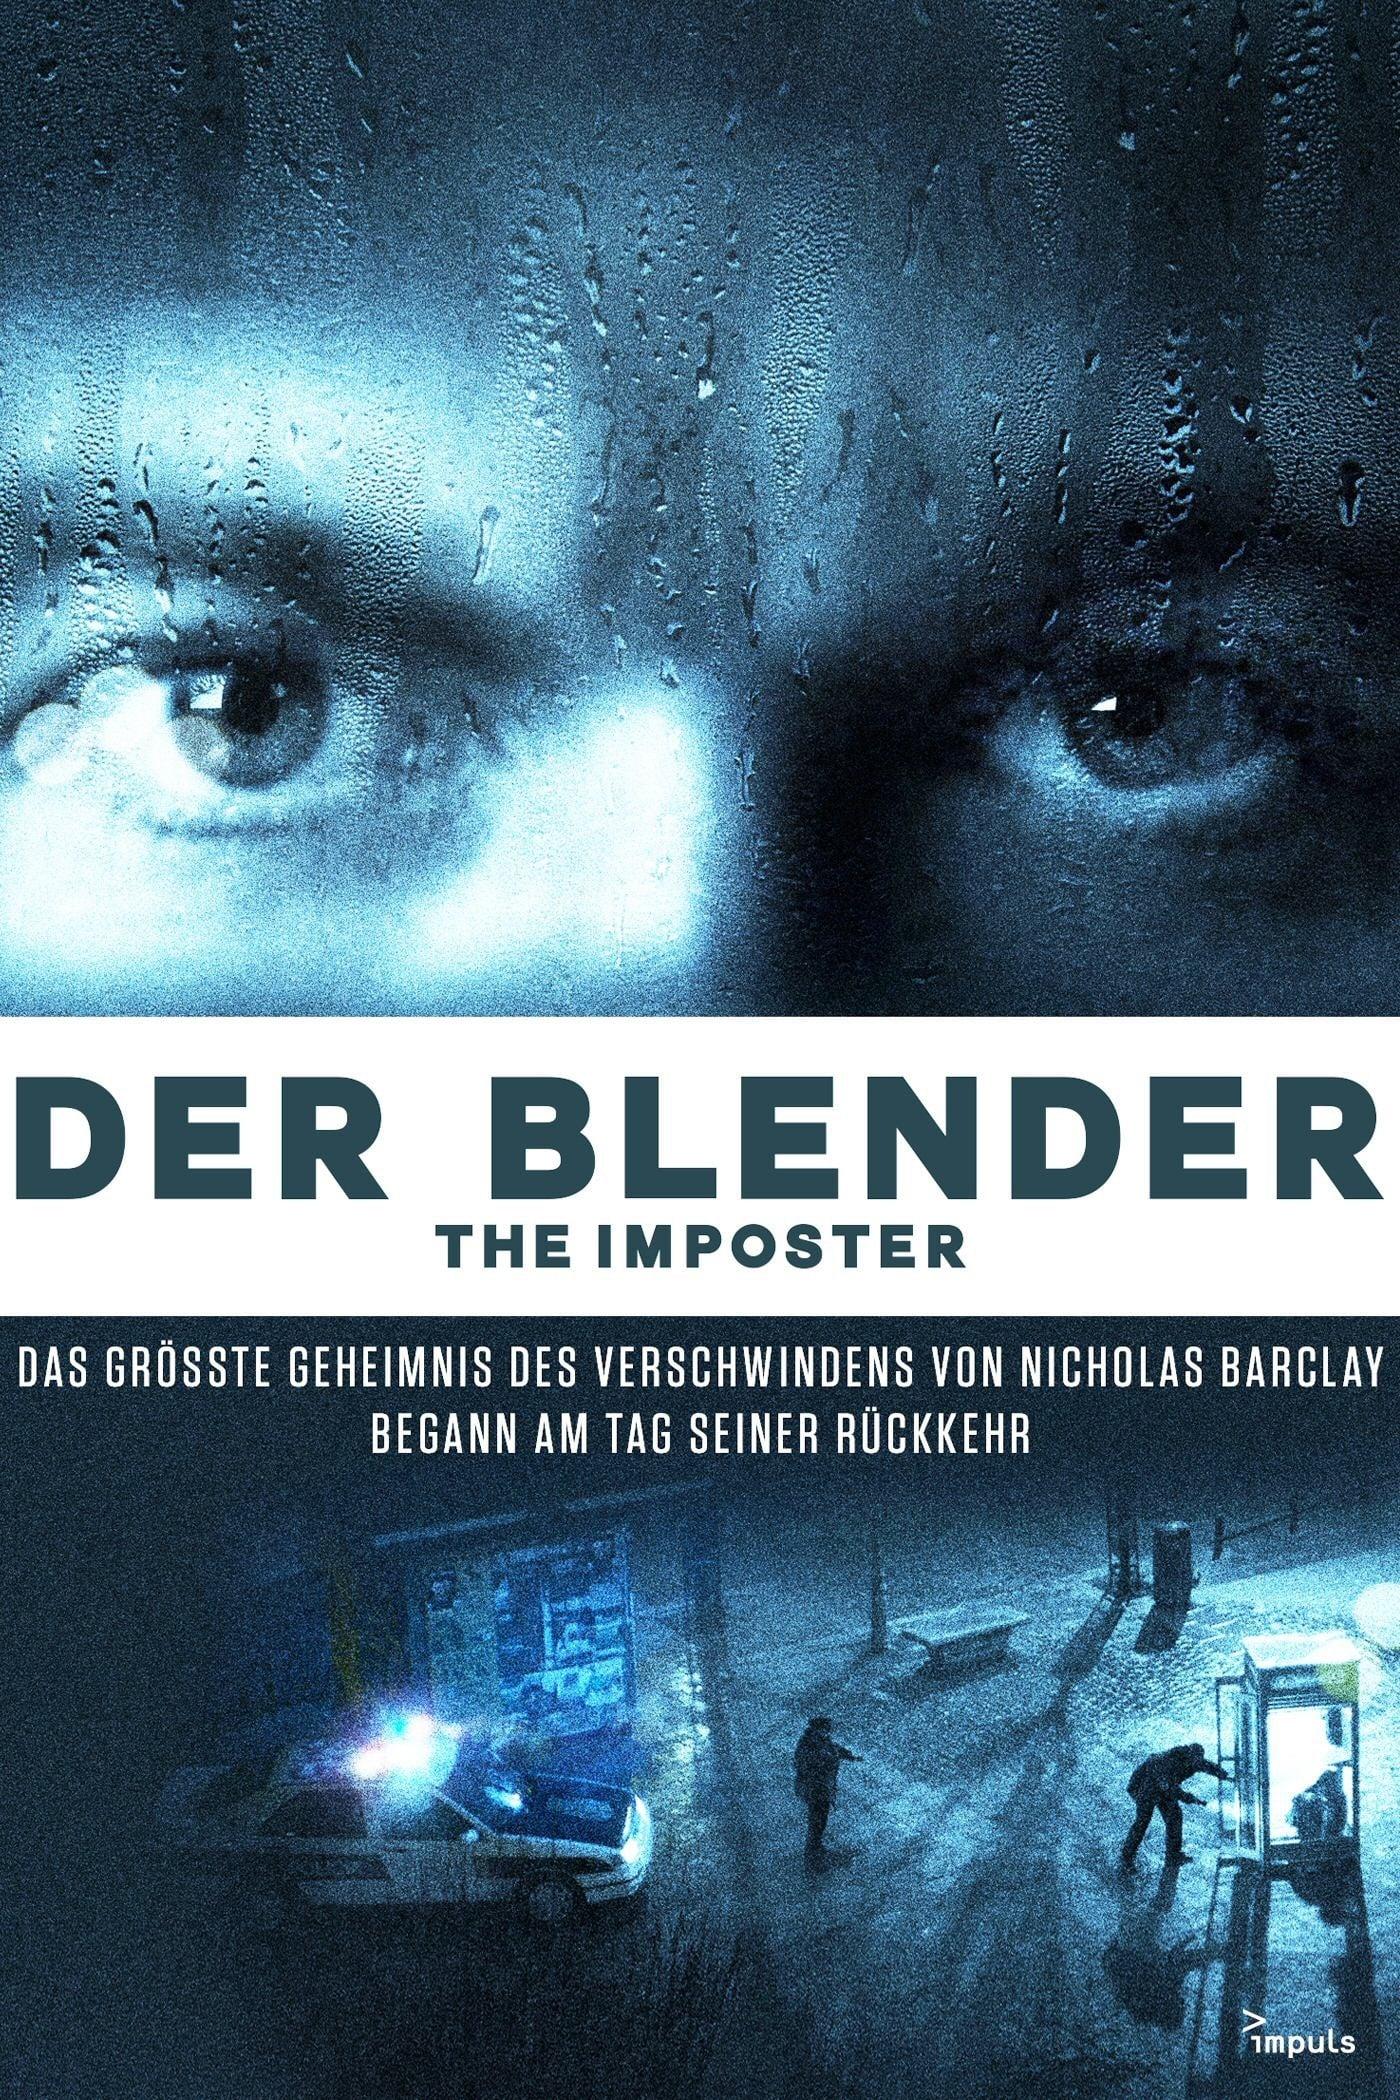 Der Blender - The Imposter poster